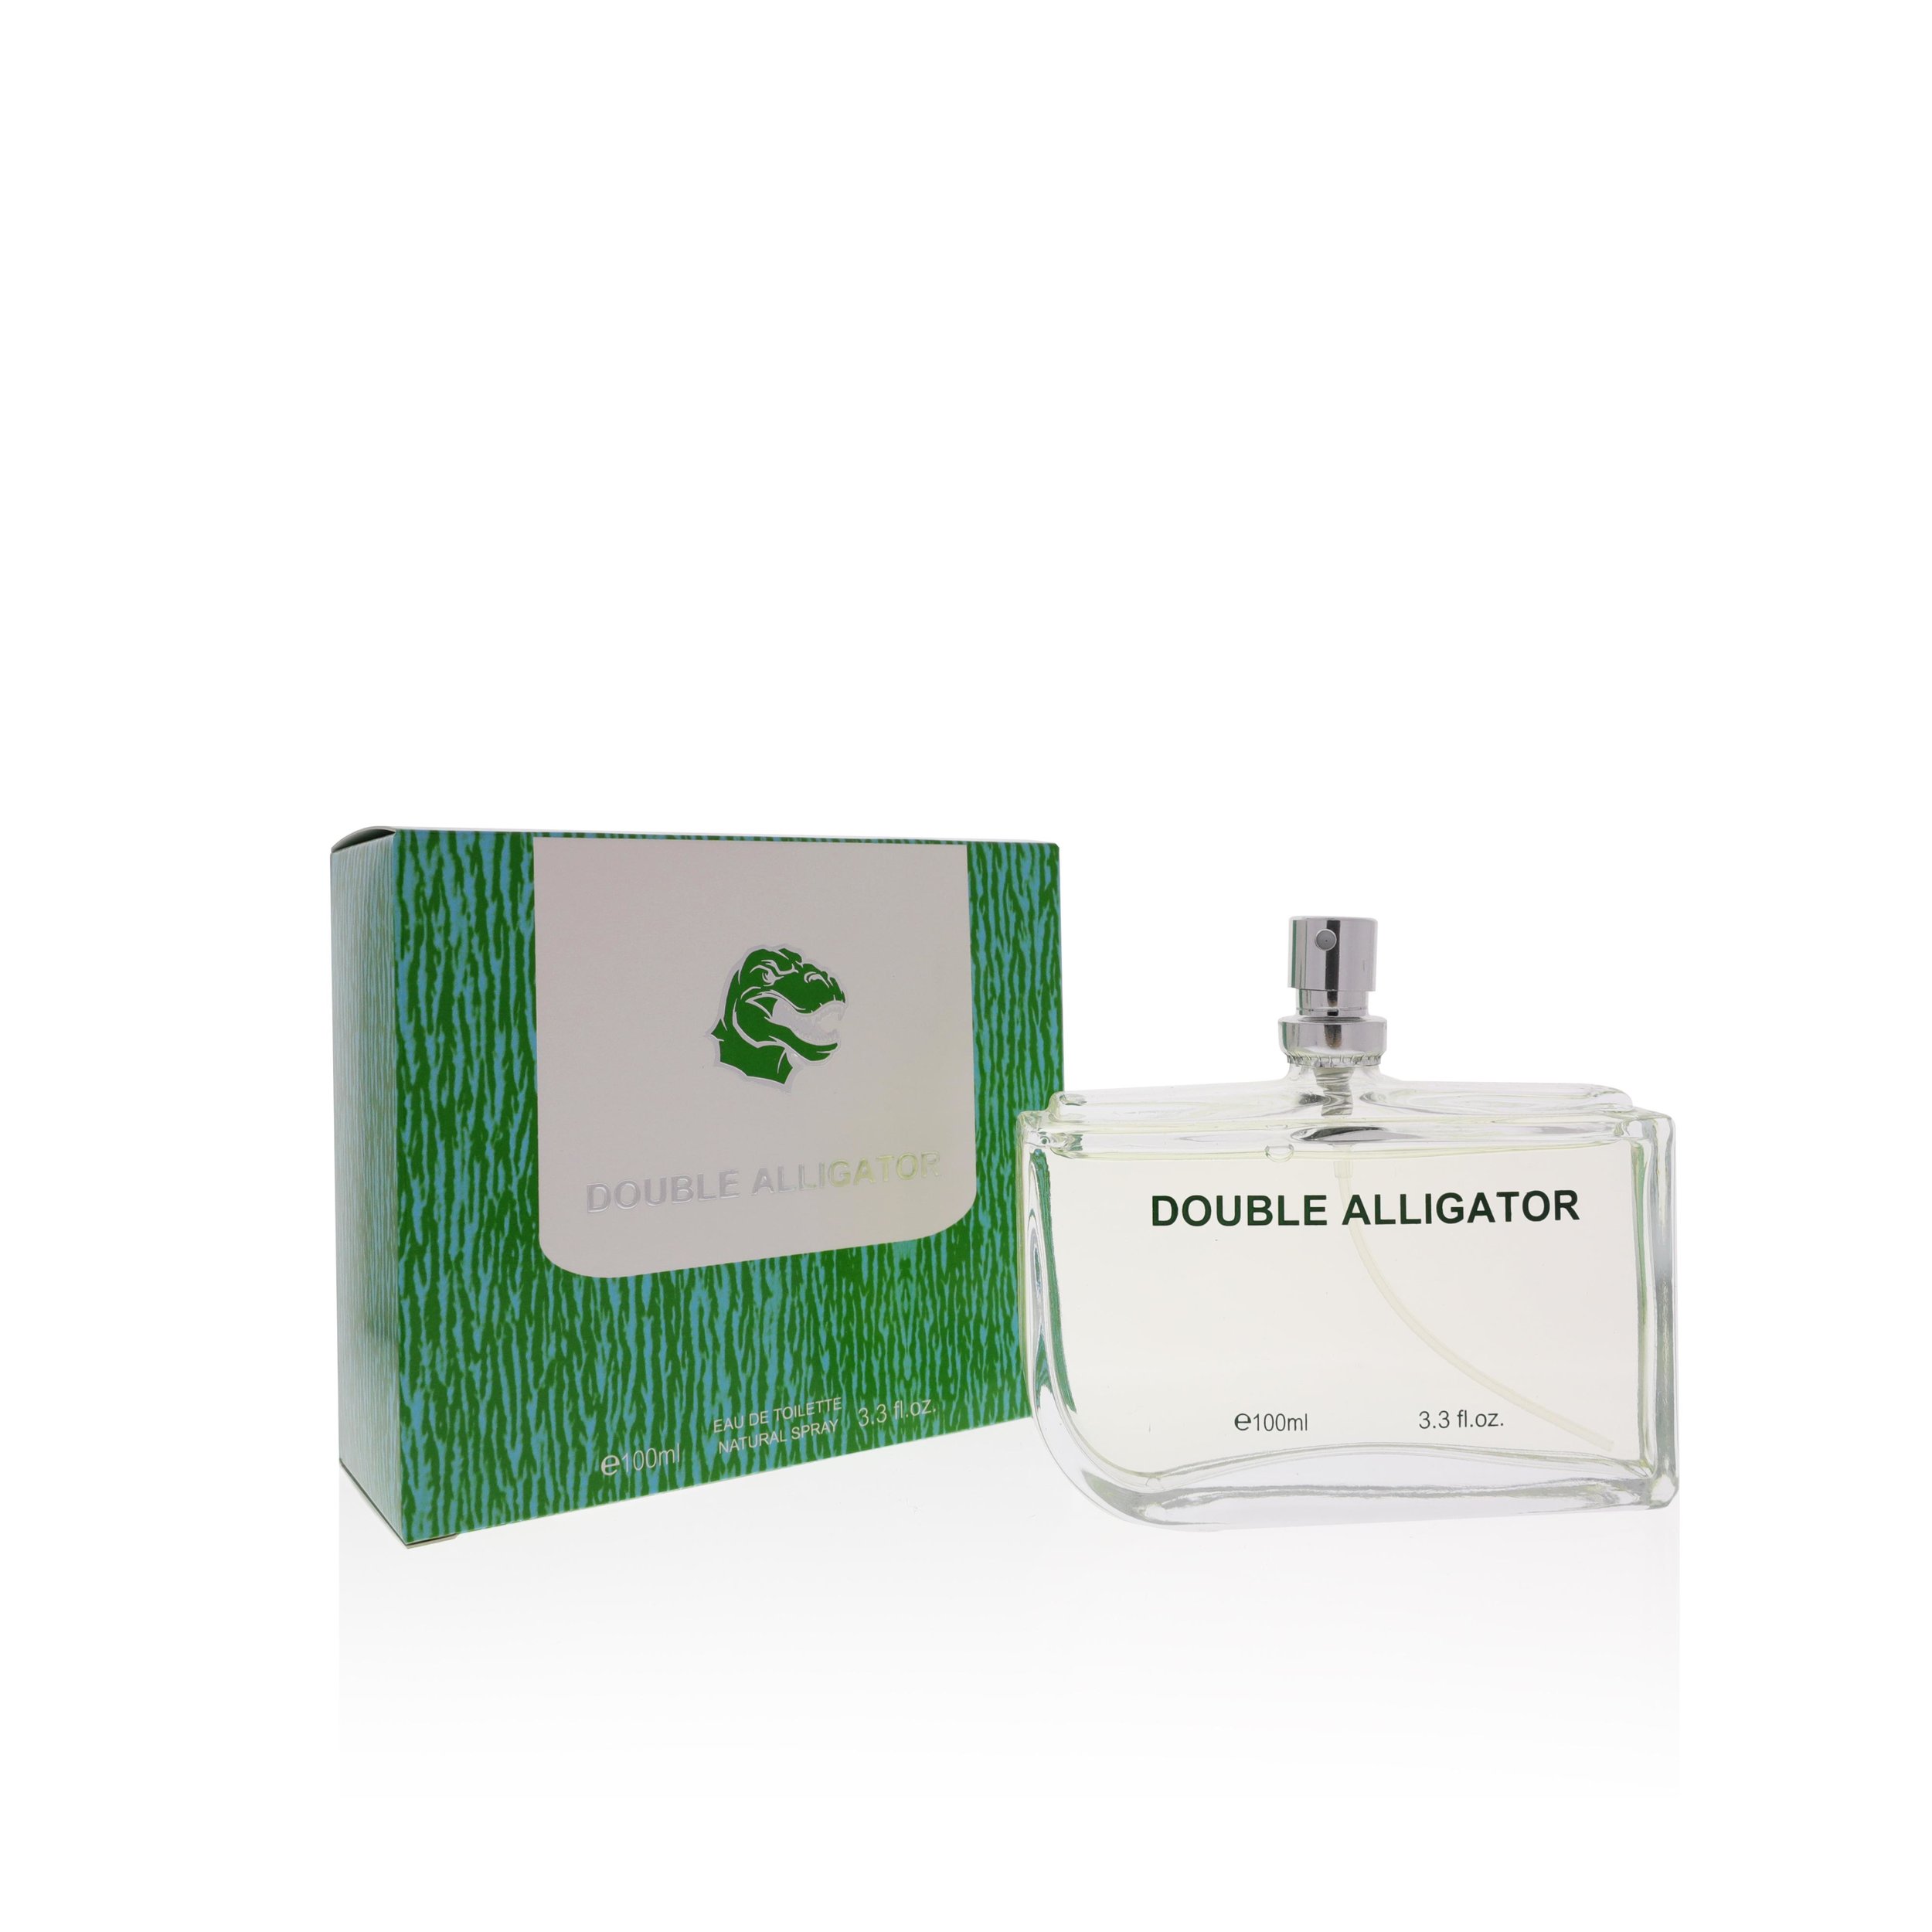 men's cologne with alligator on bottle